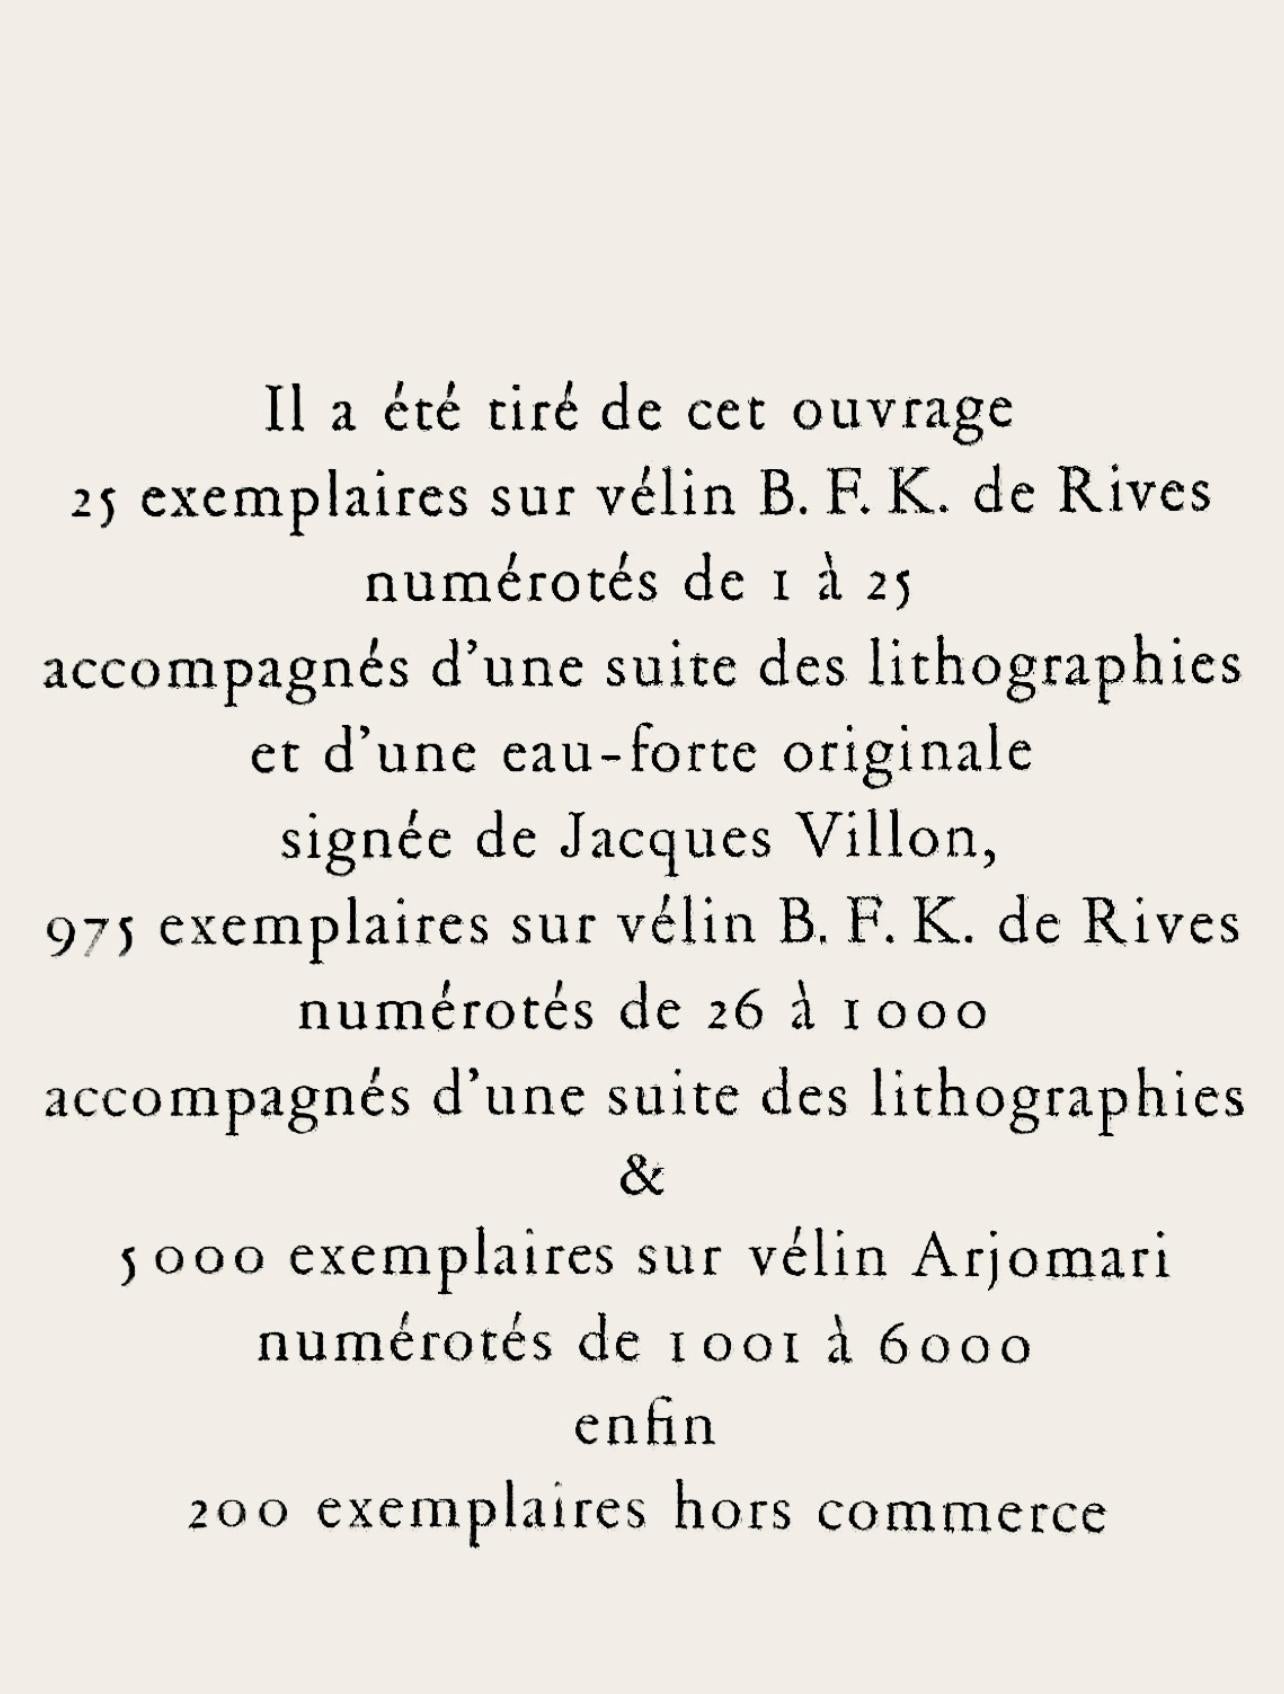 Dufy, Études: Histoire de l'Életricité, Lettre à mon peintre Raoul Dufy (after) For Sale 19